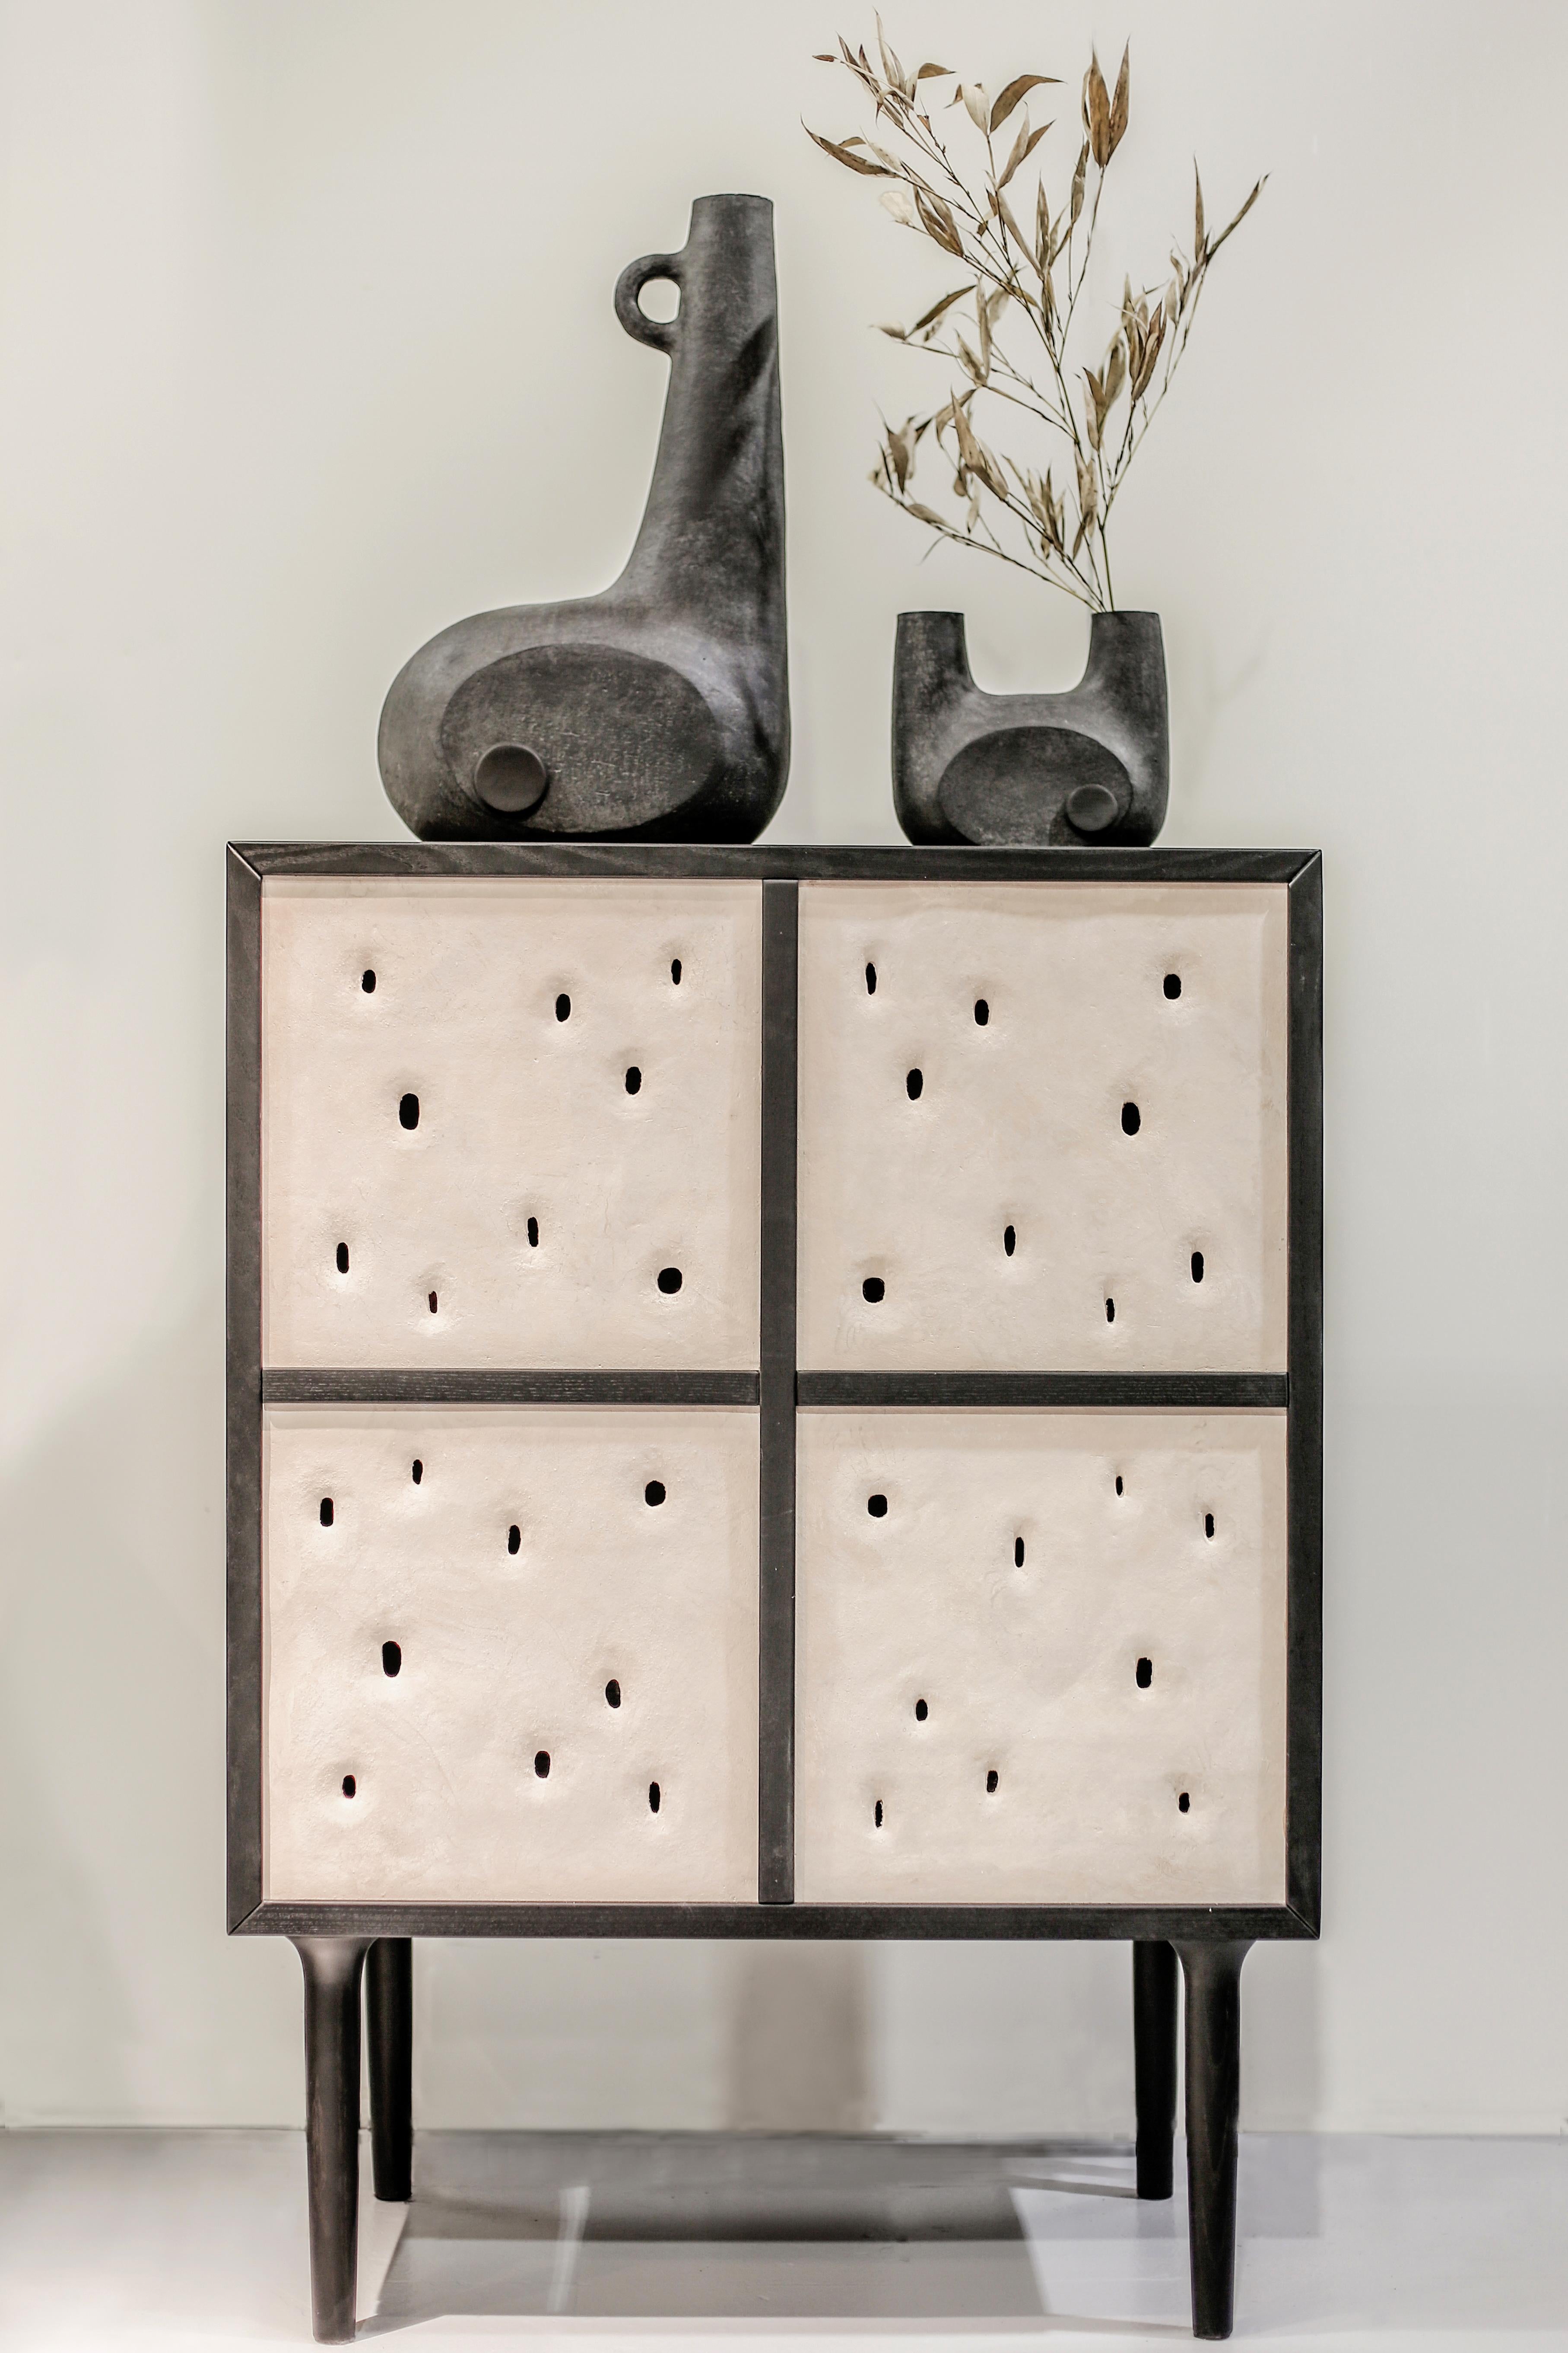 Ensemble de 2 armoires céramiques contemporaines de FAINA
Design : Victoriya Yakusha
MATERIAL : Argile, Frêne
Dimensions : 
76 x 44,3 x H 106 cm
175 x 50 x H 58,5 cm
Conçus dans le style du minimalisme ethnique, les articles de la collection